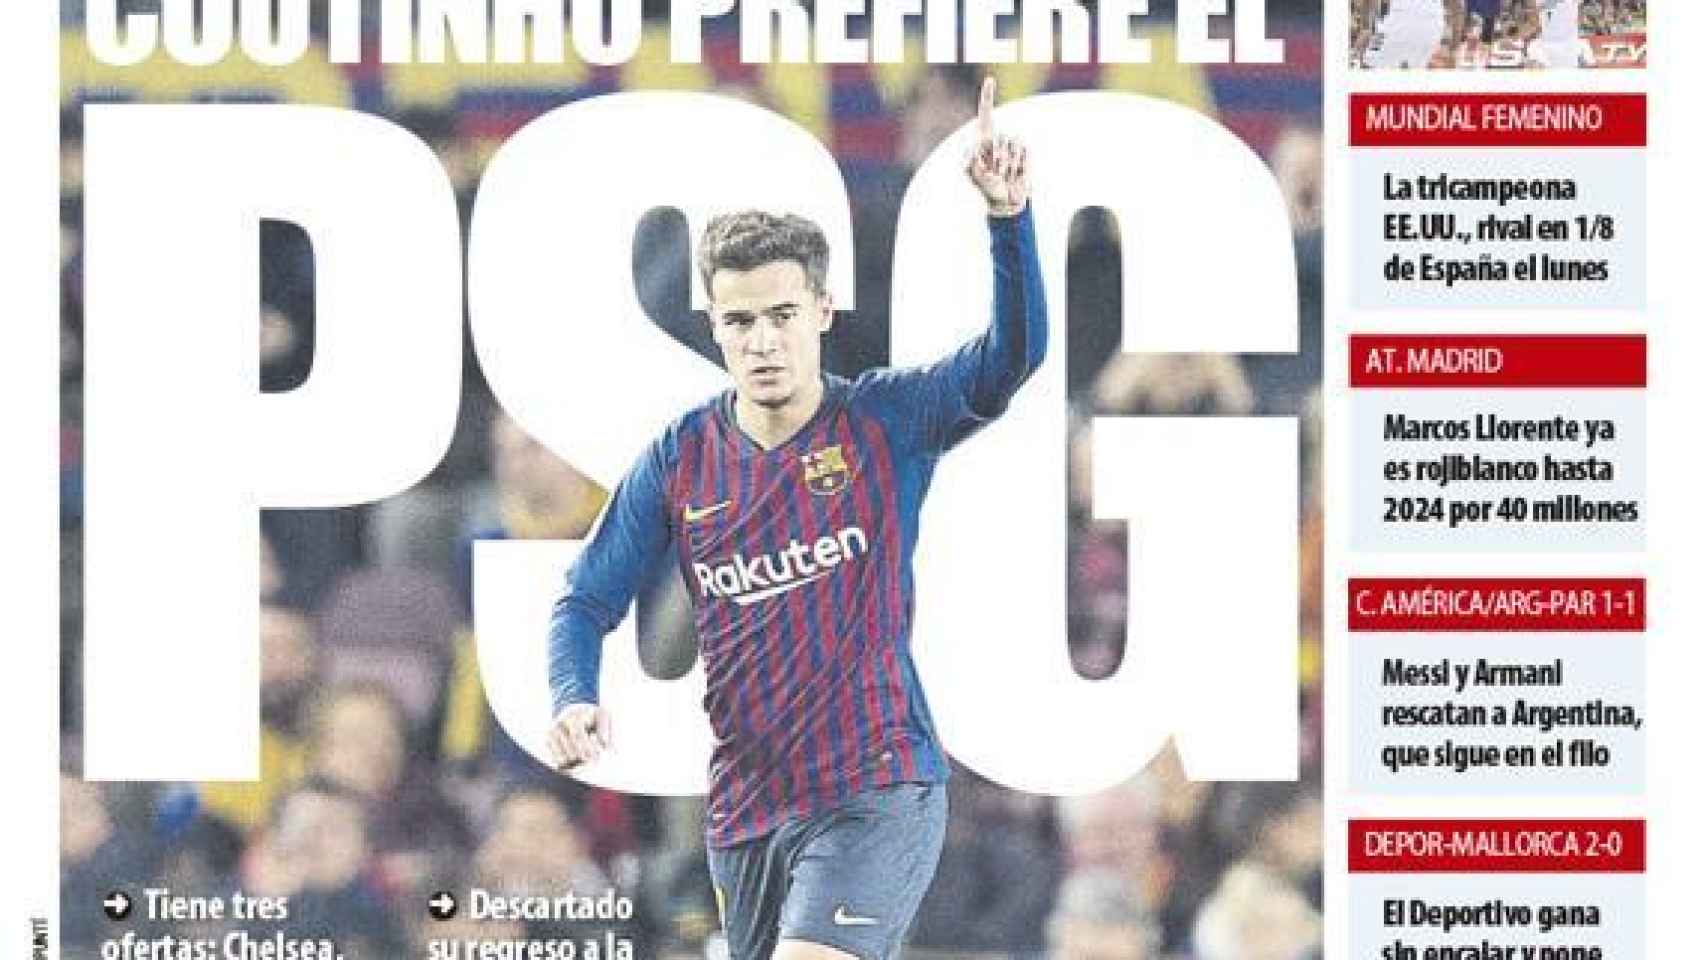 La portada del diario Mundo Deportivo (21/06/2019)